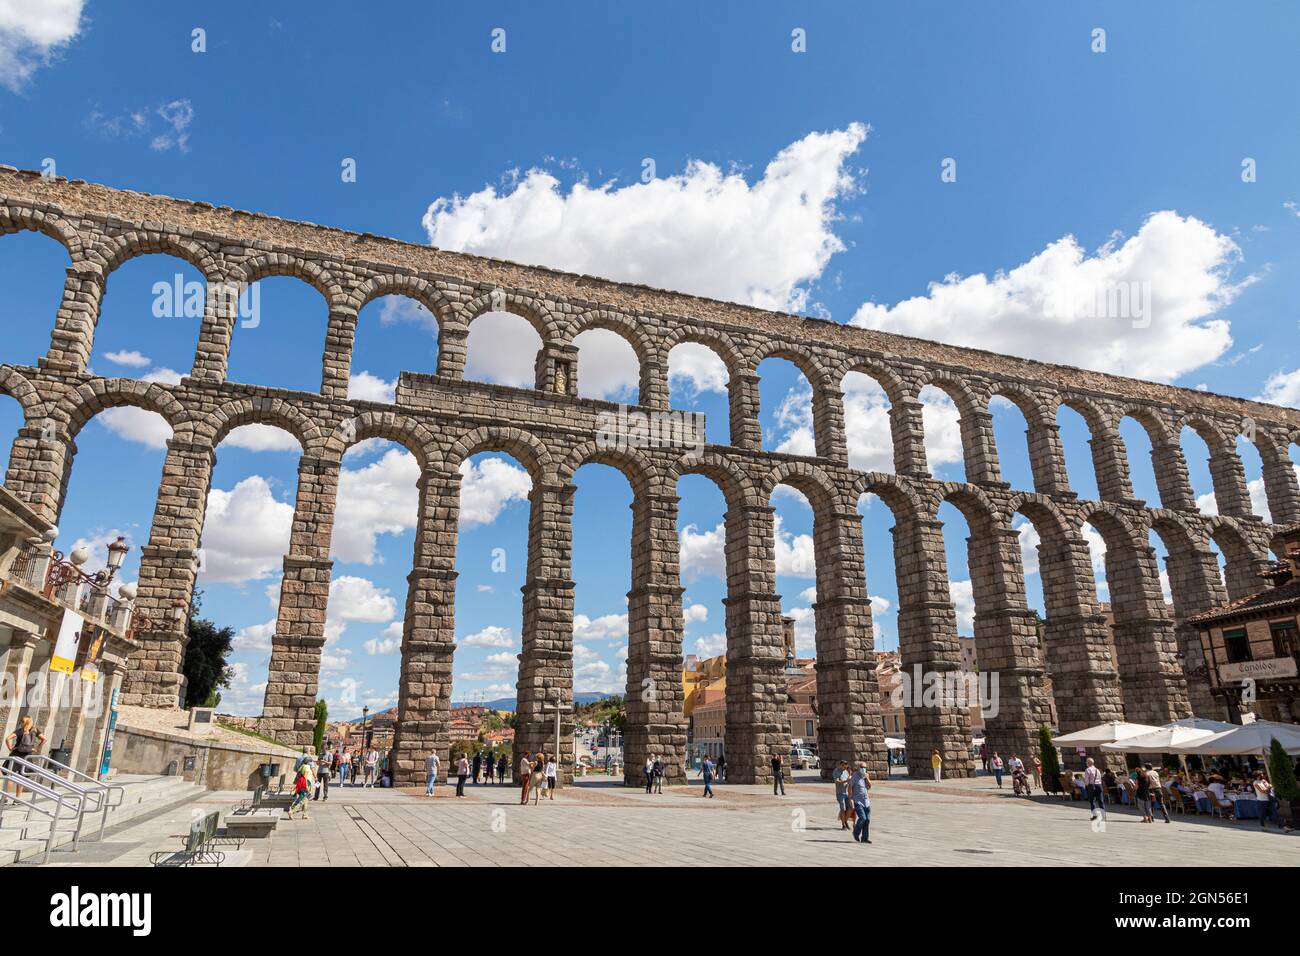 Ségovie, Espagne. L'Acueducto de Segovia, un aqueduc romain ou pont d'eau construit au 1er siècle après J.-C. Banque D'Images